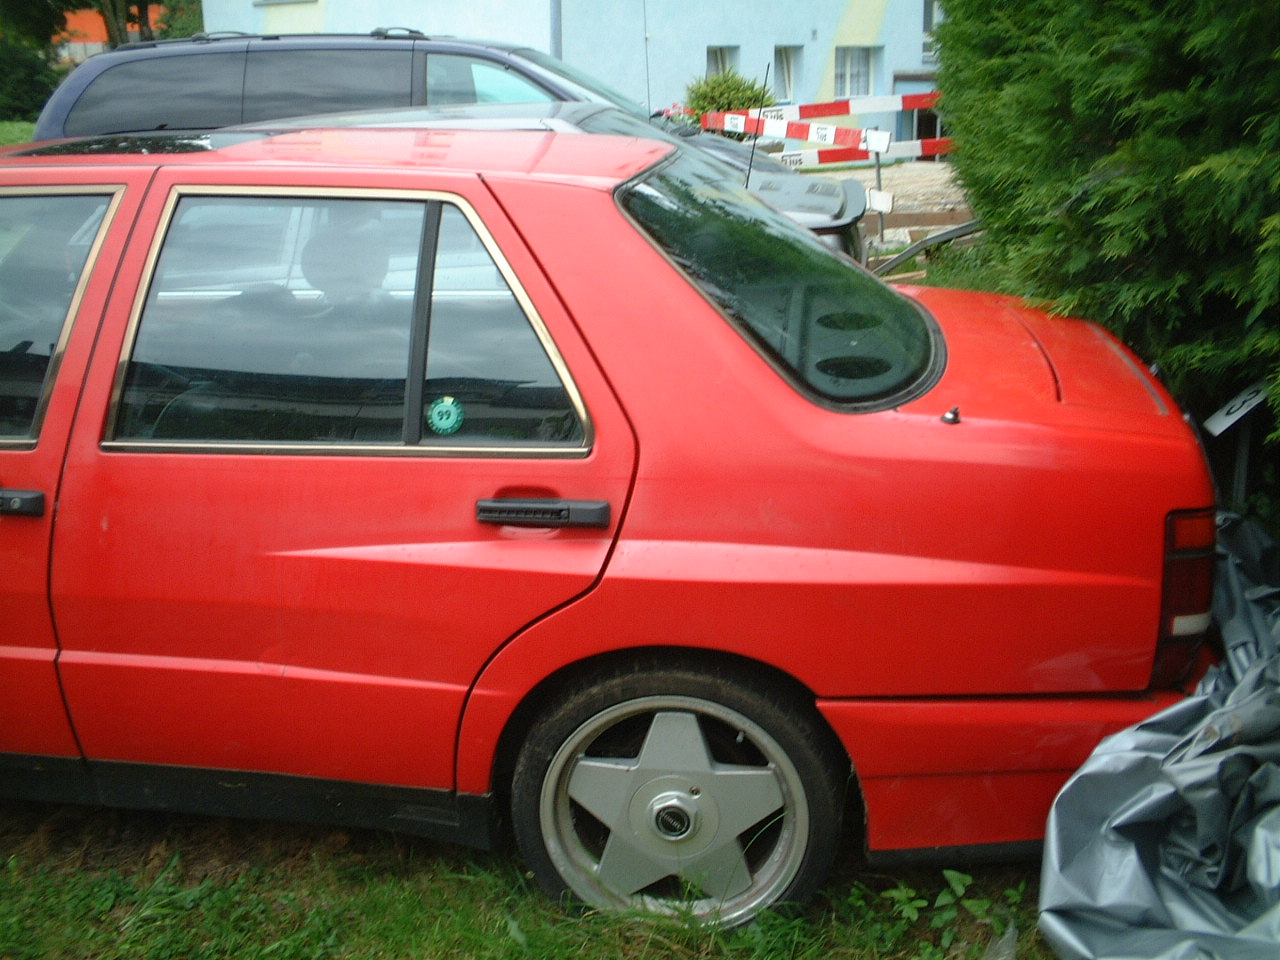 Lancia Thema 832